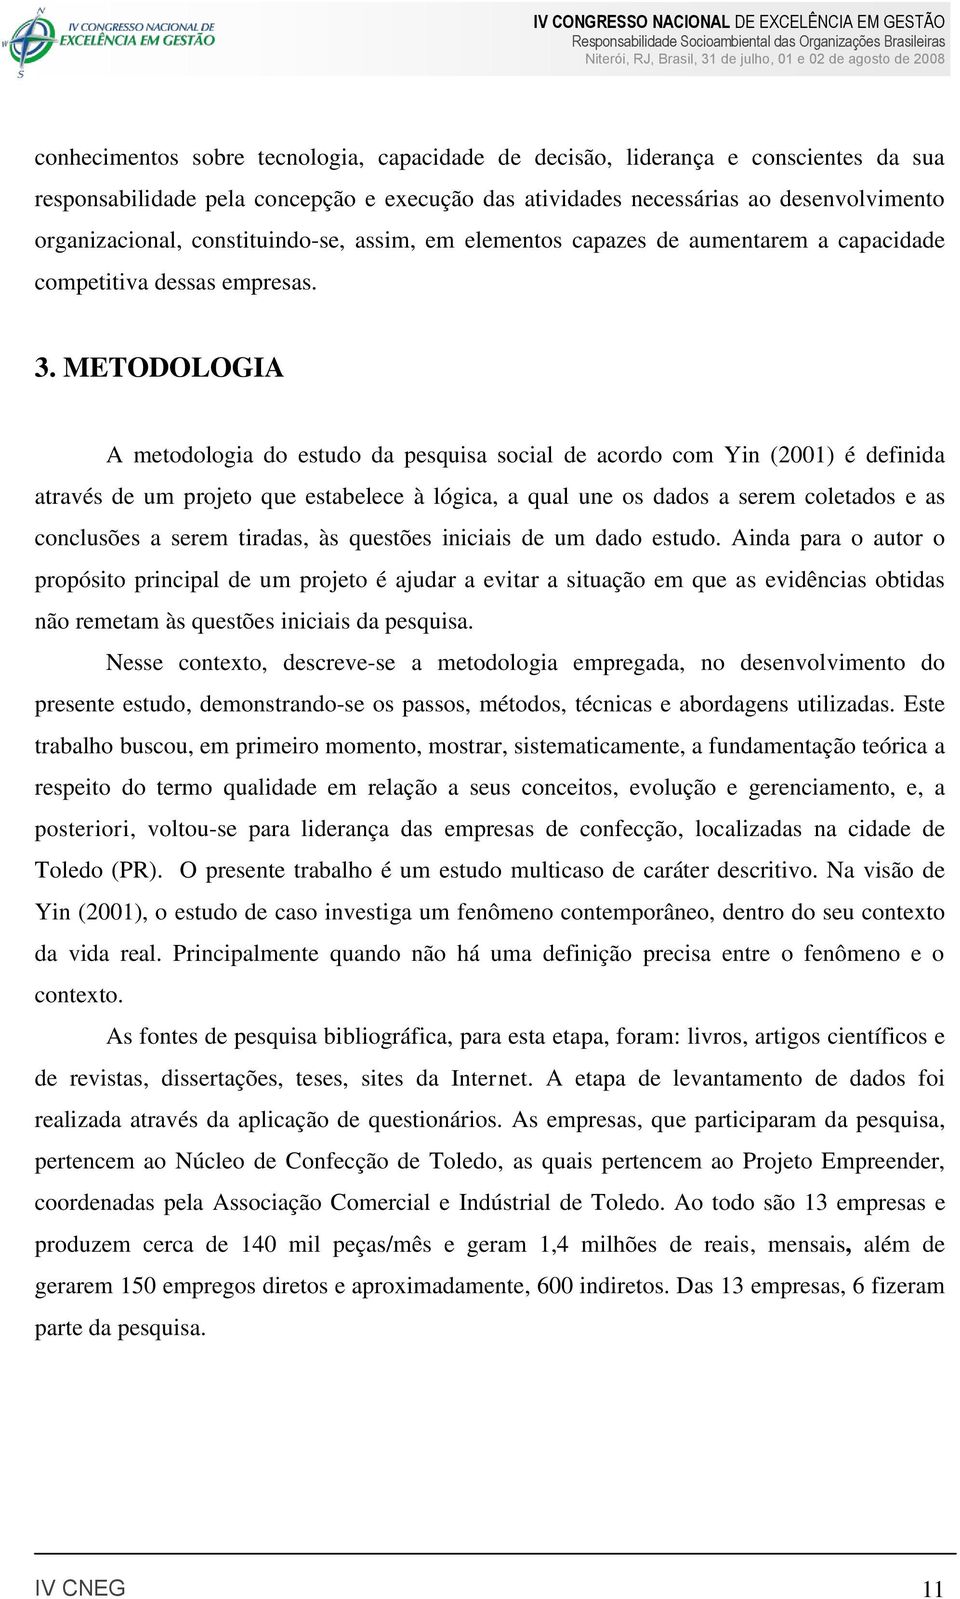 METODOLOGIA A metodologia do estudo da pesquisa social de acordo com Yin (2001) é definida através de um projeto que estabelece à lógica, a qual une os dados a serem coletados e as conclusões a serem